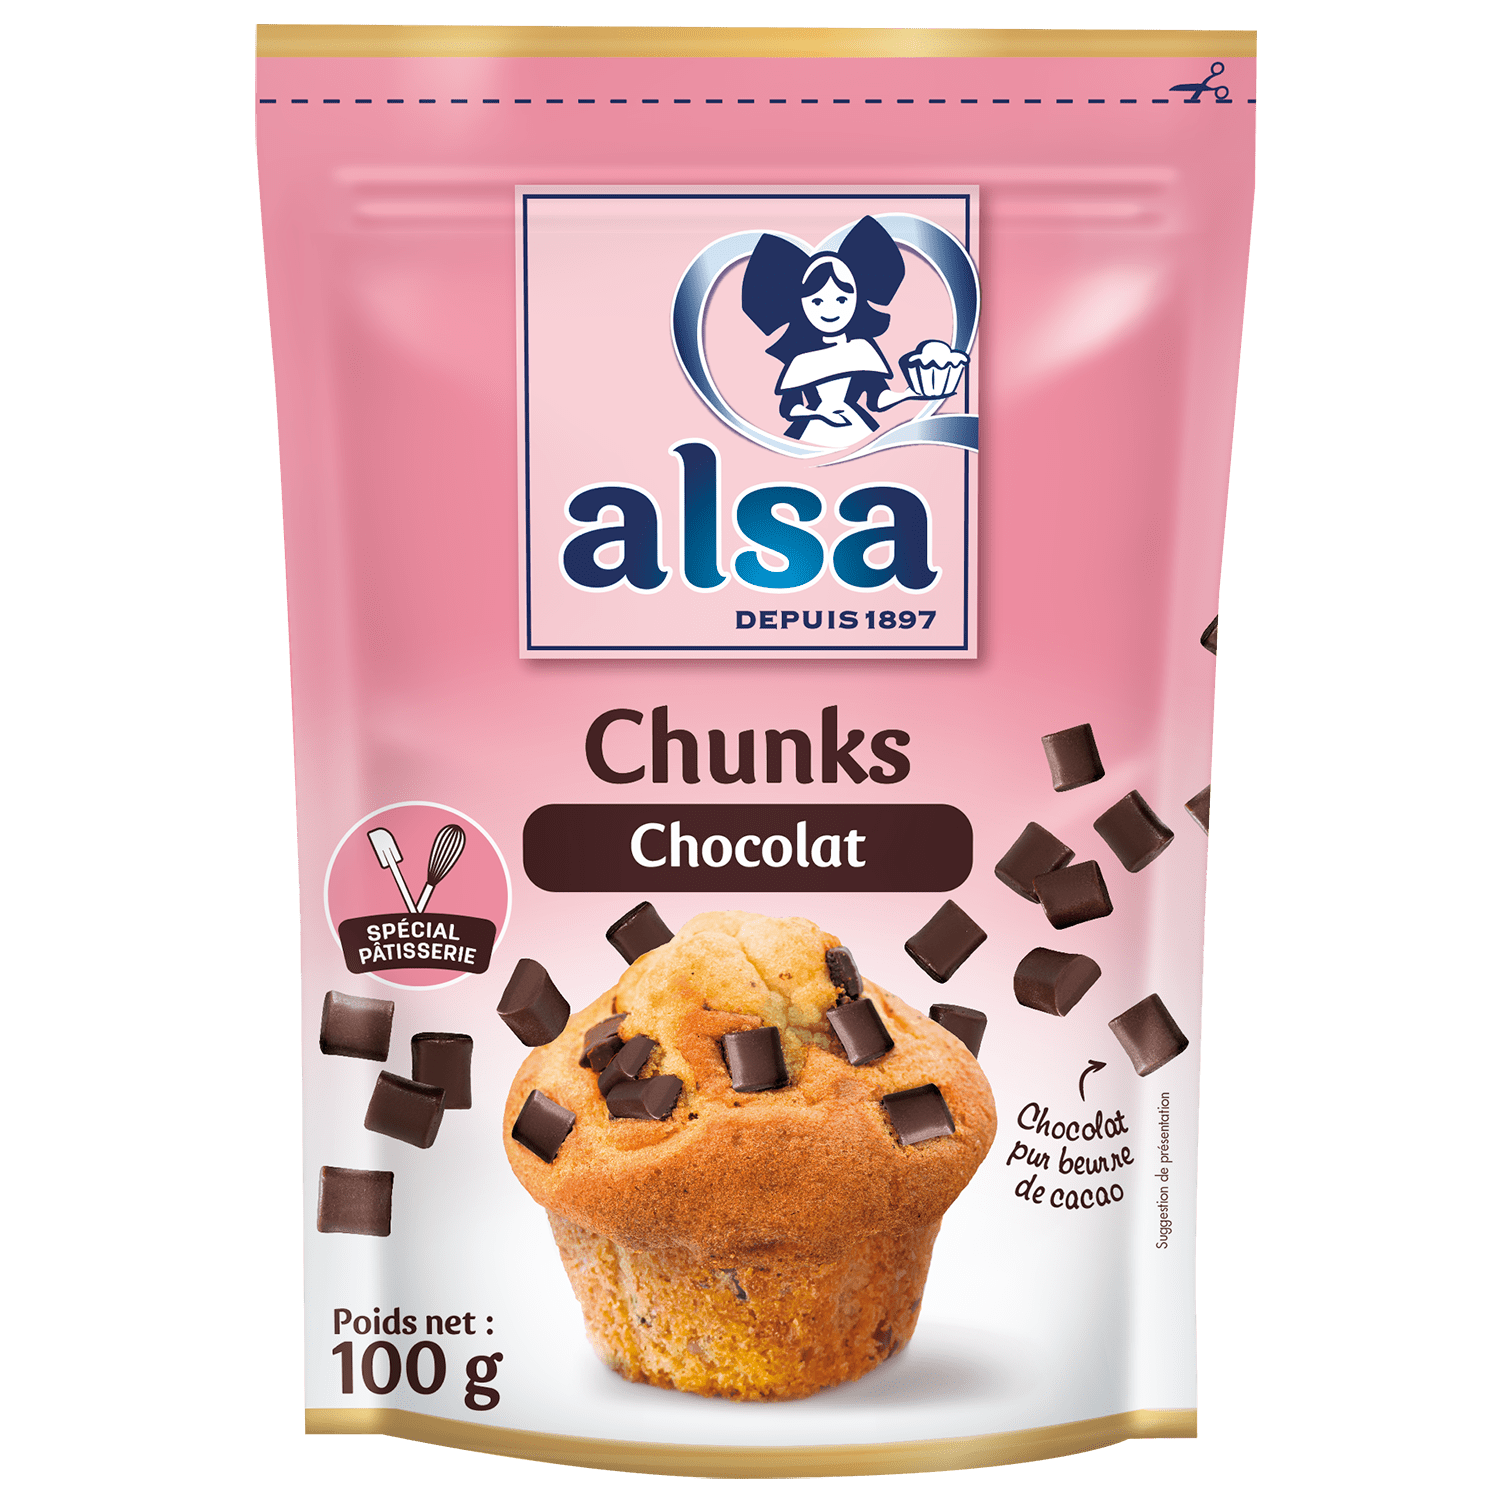 Chunks chocolat - alsa - depuis 1897